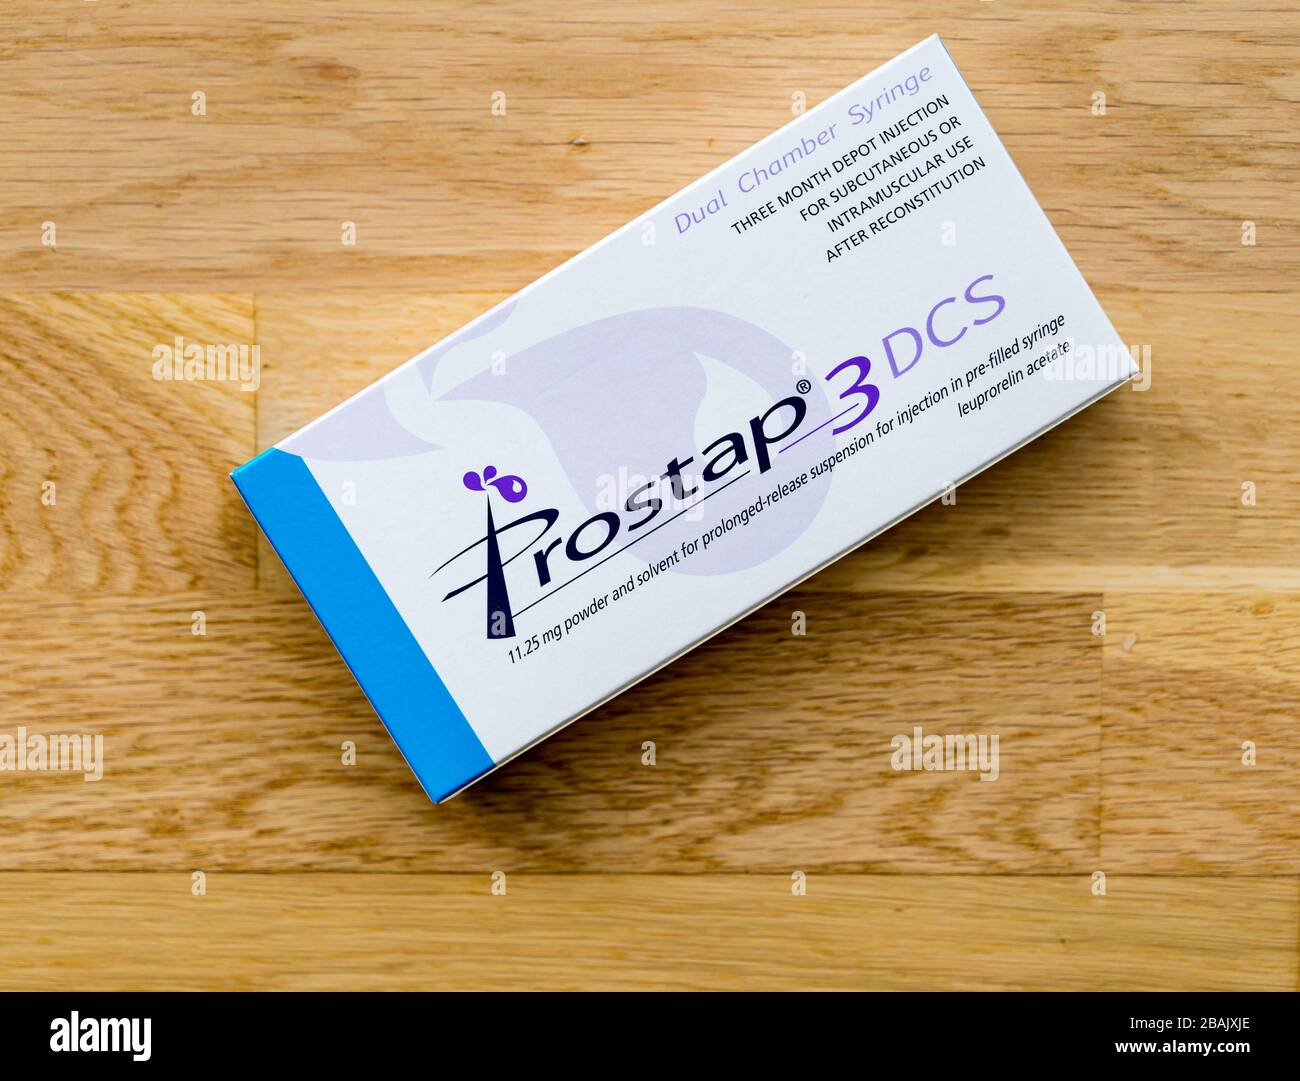 Prostap Leuprorelin-Acetat vorgefüllte Spritzenhormon-Behandlung für Prostatakrebs Stockfoto